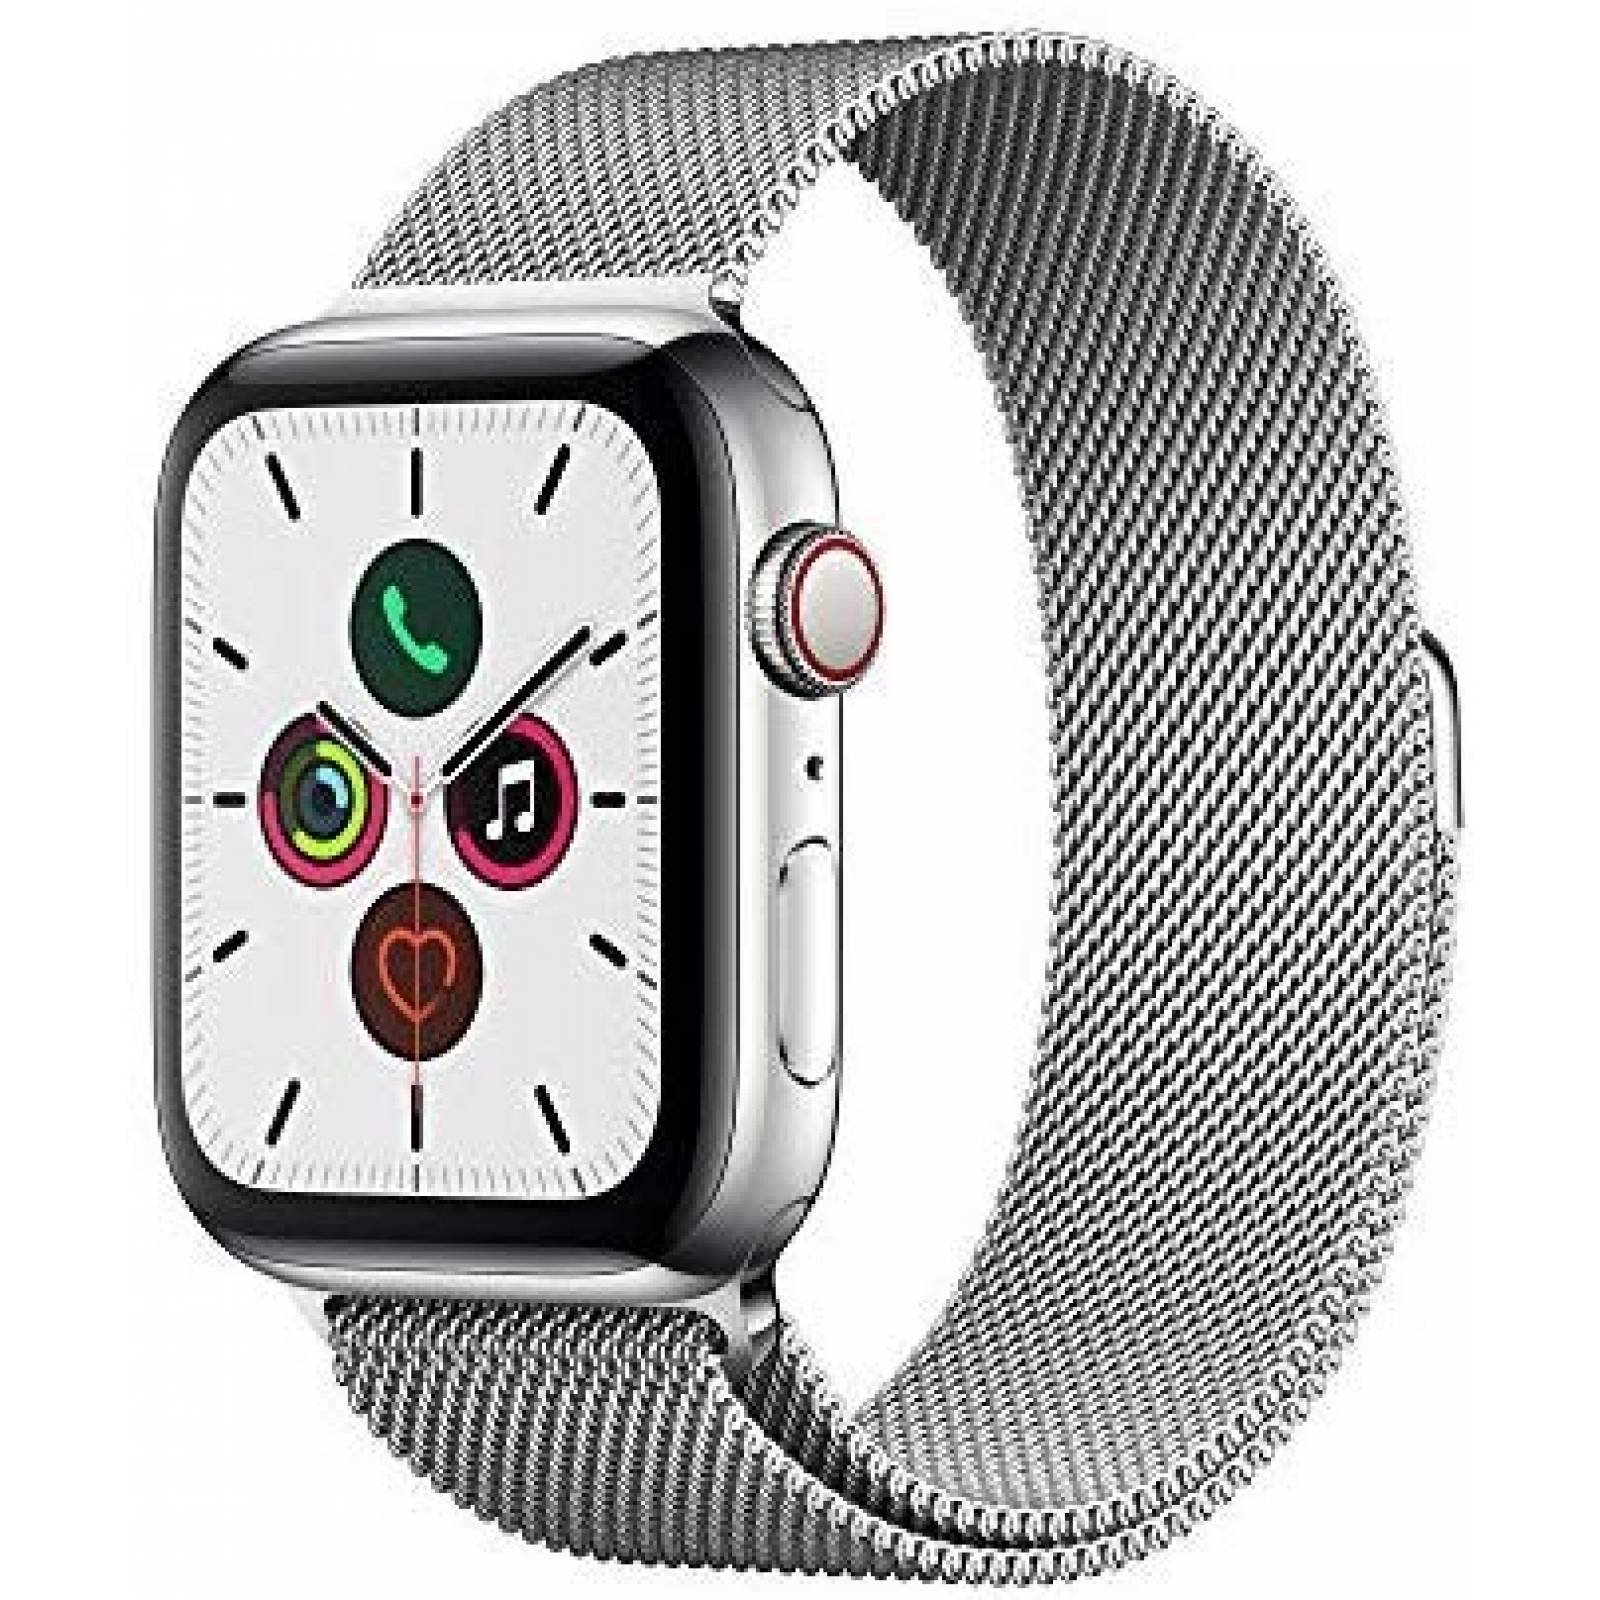 Smartwatch Apple Watch Series 5 (GPS + Celular, 44mm) -Plata